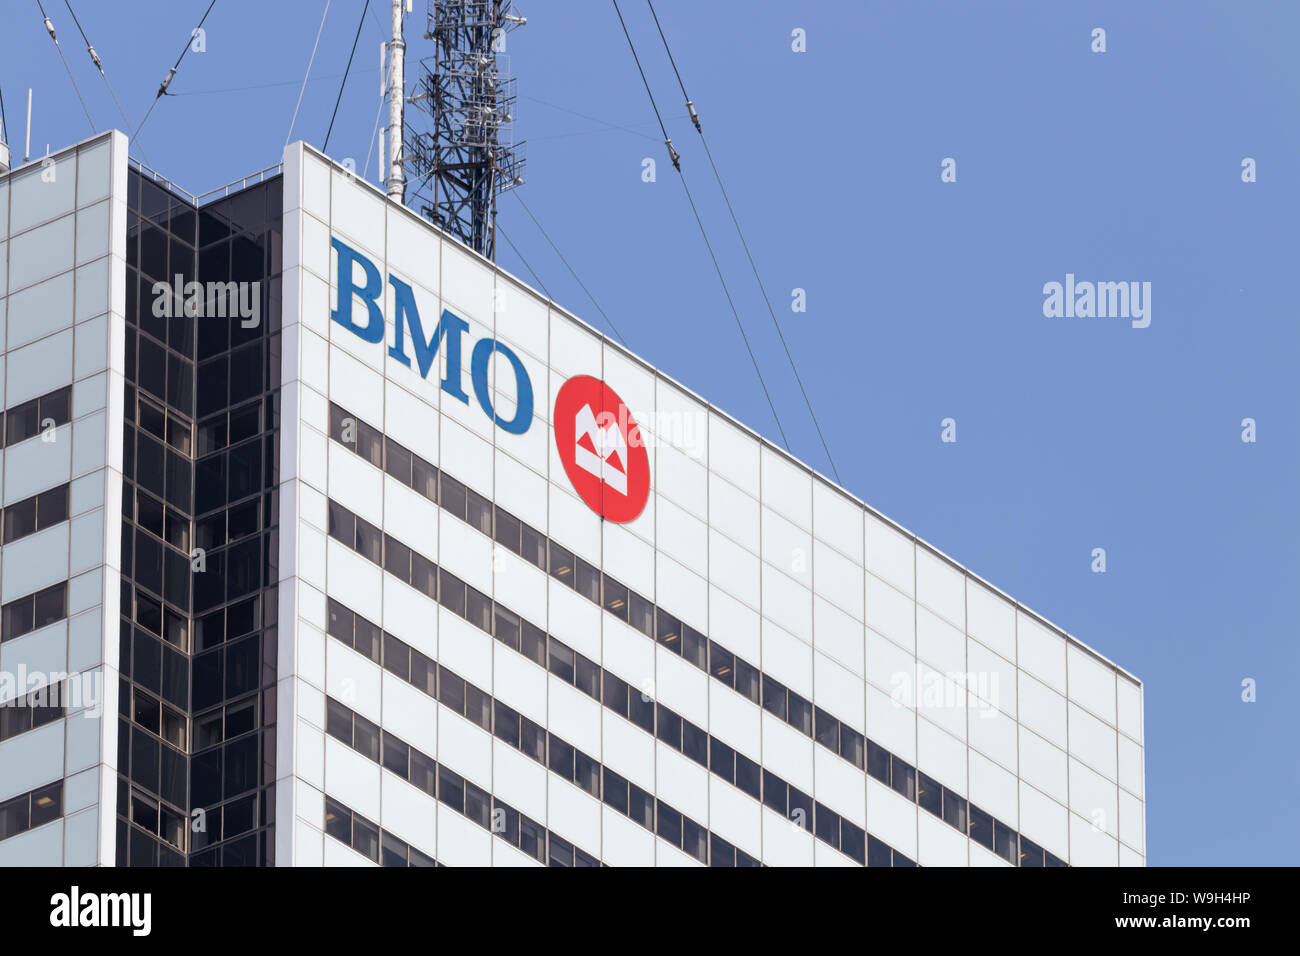 La Banque de Montréal (BMO) logo sur First Canadian Place gratte-ciel dans le centre-ville de Toronto. Banque D'Images